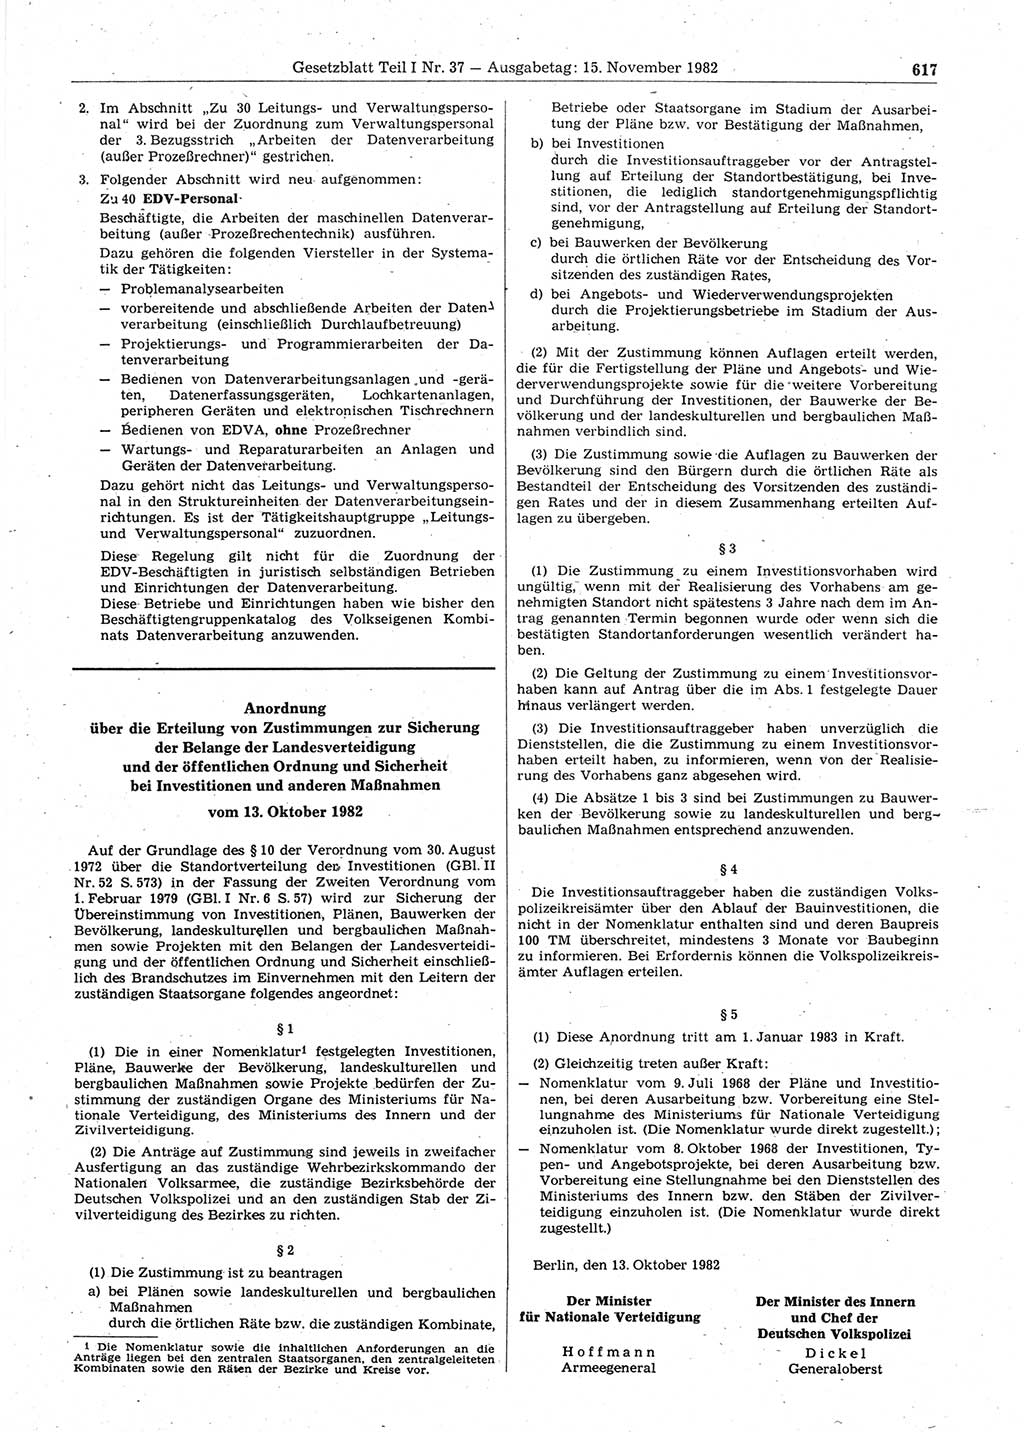 Gesetzblatt (GBl.) der Deutschen Demokratischen Republik (DDR) Teil Ⅰ 1982, Seite 617 (GBl. DDR Ⅰ 1982, S. 617)